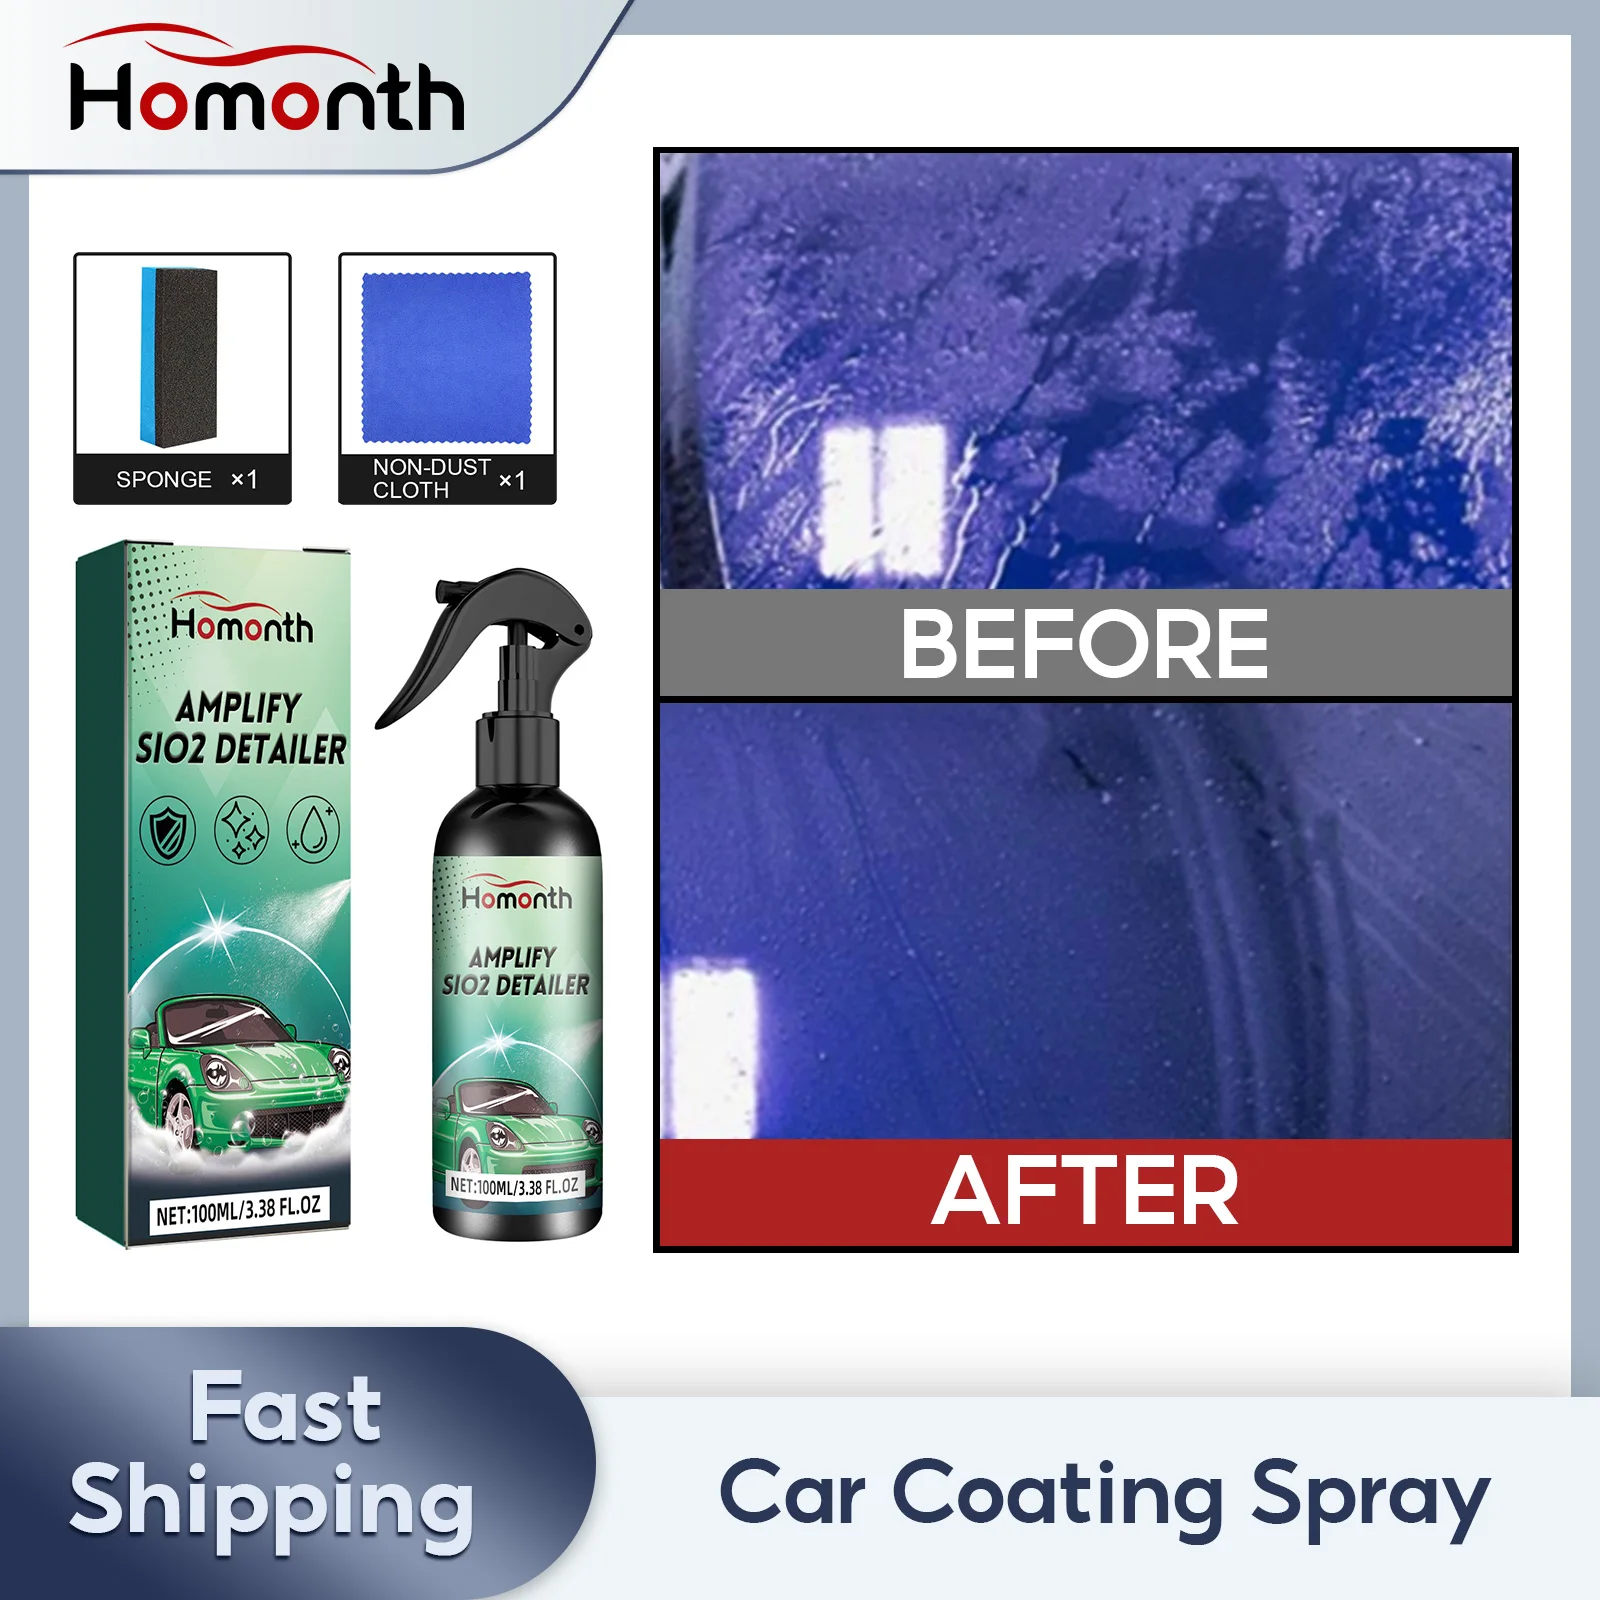 

Спрей для керамического покрытия автомобиля, Гидрофобный очиститель для удаления царапин и водяных пятен, нанопокрытие для полировки кузова автомобиля